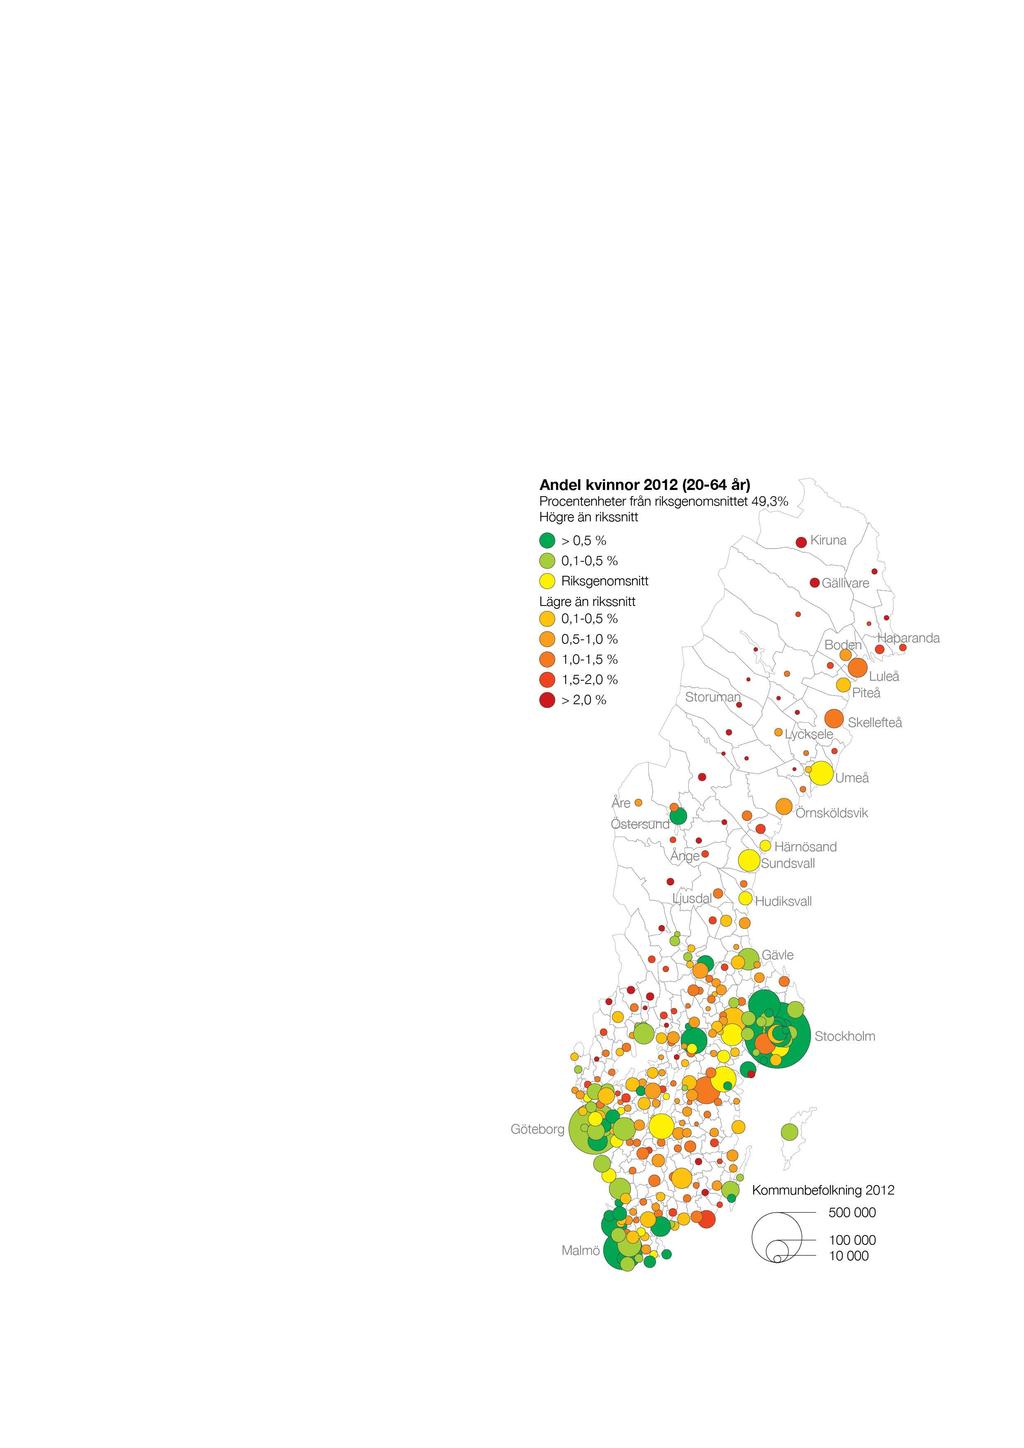 näringsliv, har ytstora och glesa länder ett produktionshandikapp. De senaste årtiondenas snabba regionförstoring i Sverige kan ses som ett försök att överbrygga bristen på stora regioner.